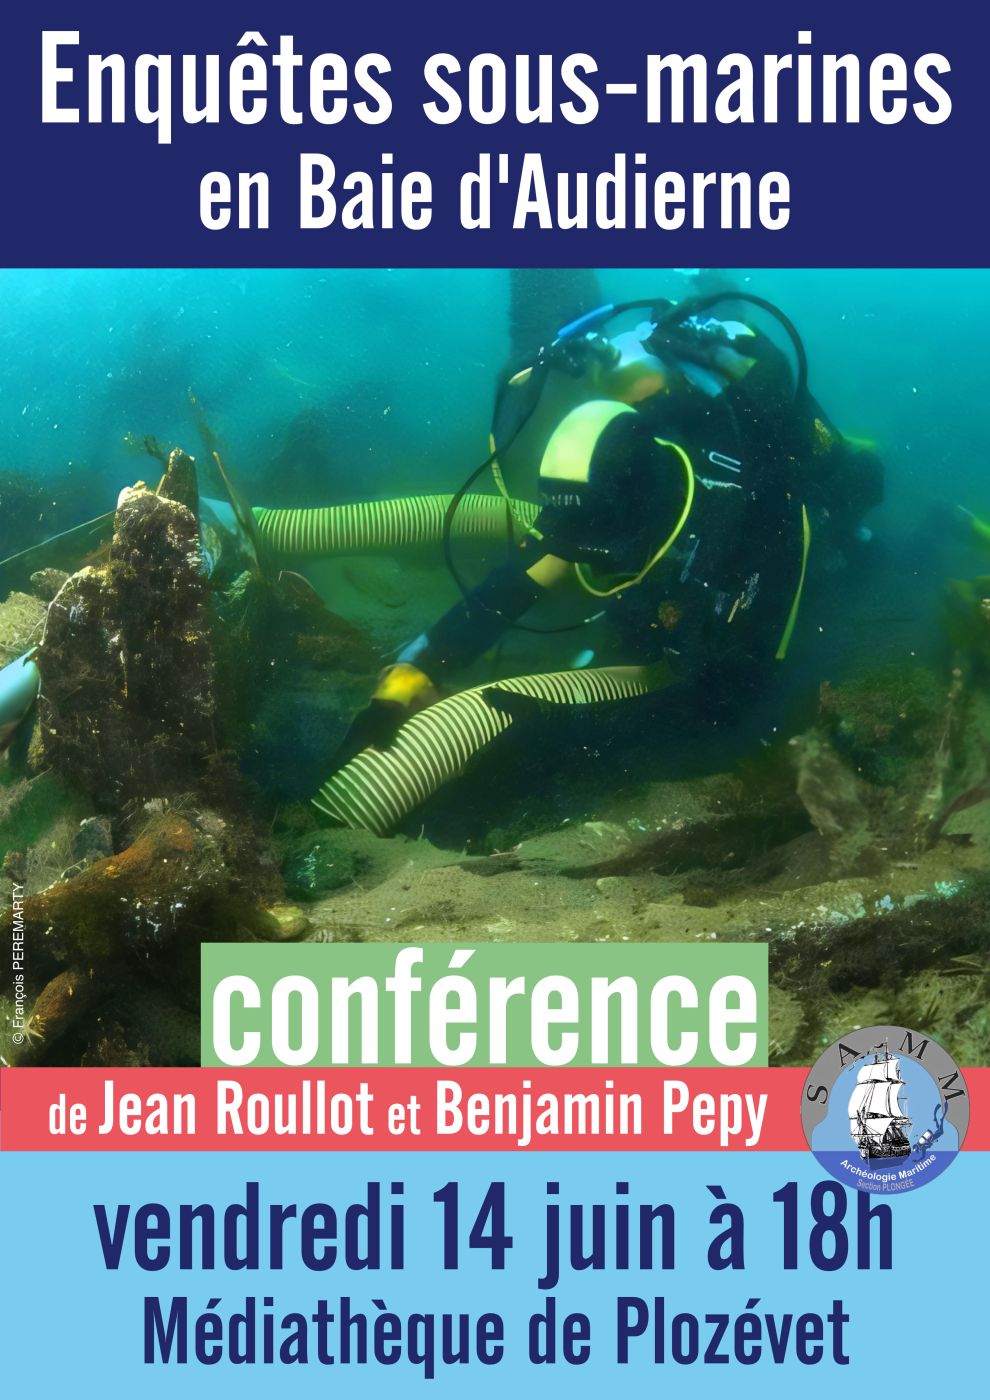 Affiche de la conférence de Jean Roullot et Benjamin Pepy (Enquêtes sous-marines en Baie d'Audierne) Vendredi 14 juin à 18h00. Médiathèque de Plozévet